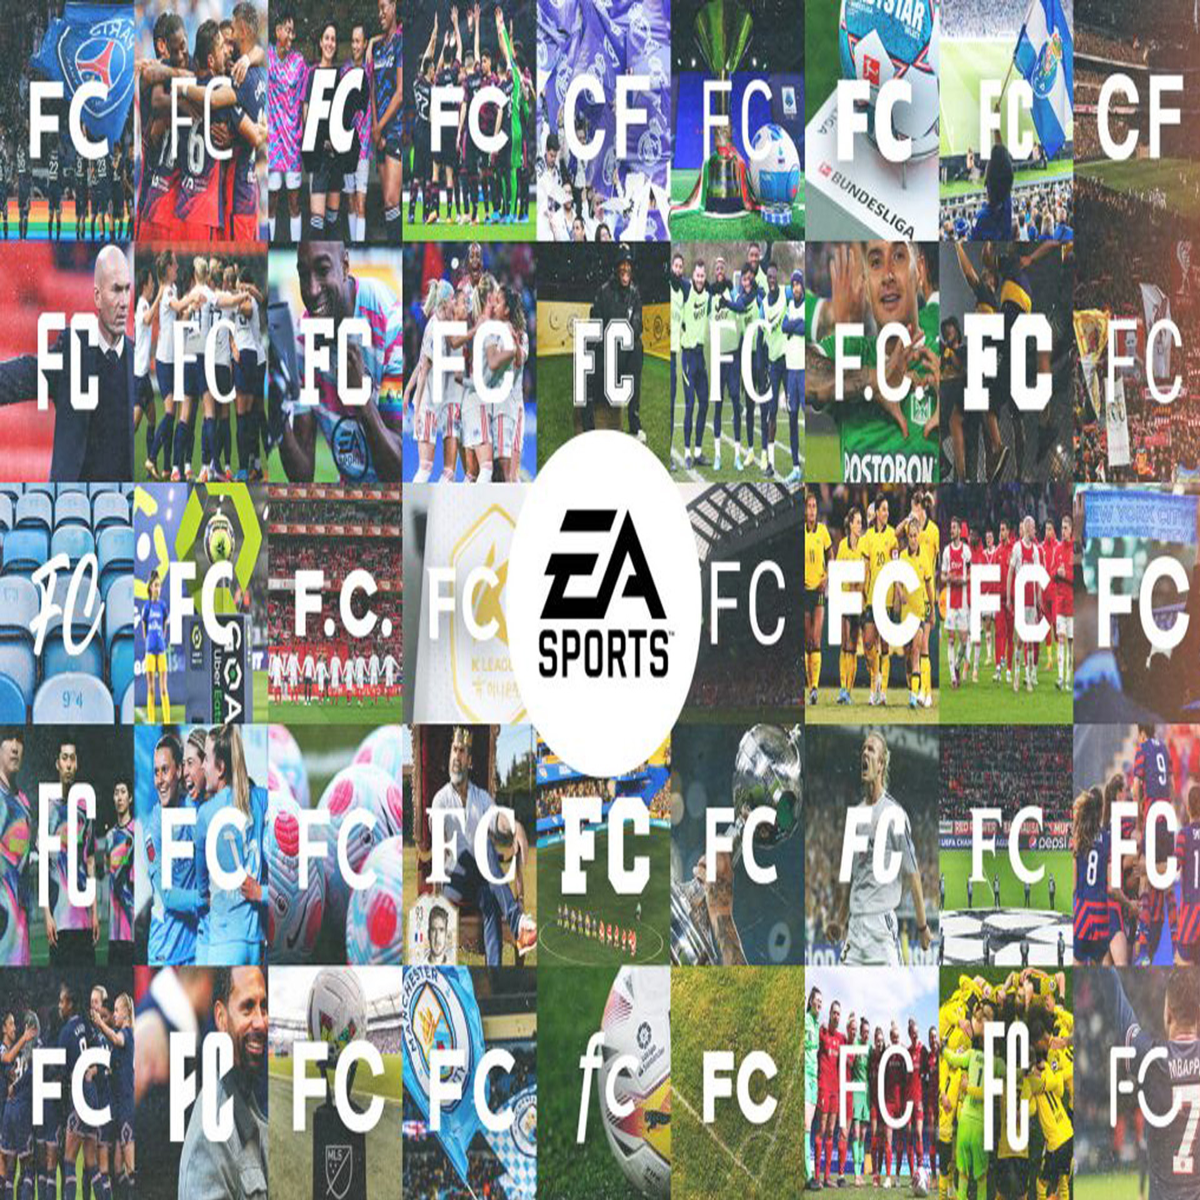 EA FC 24 review: I'm a FIFA expert and EA FC 24 is a different beast